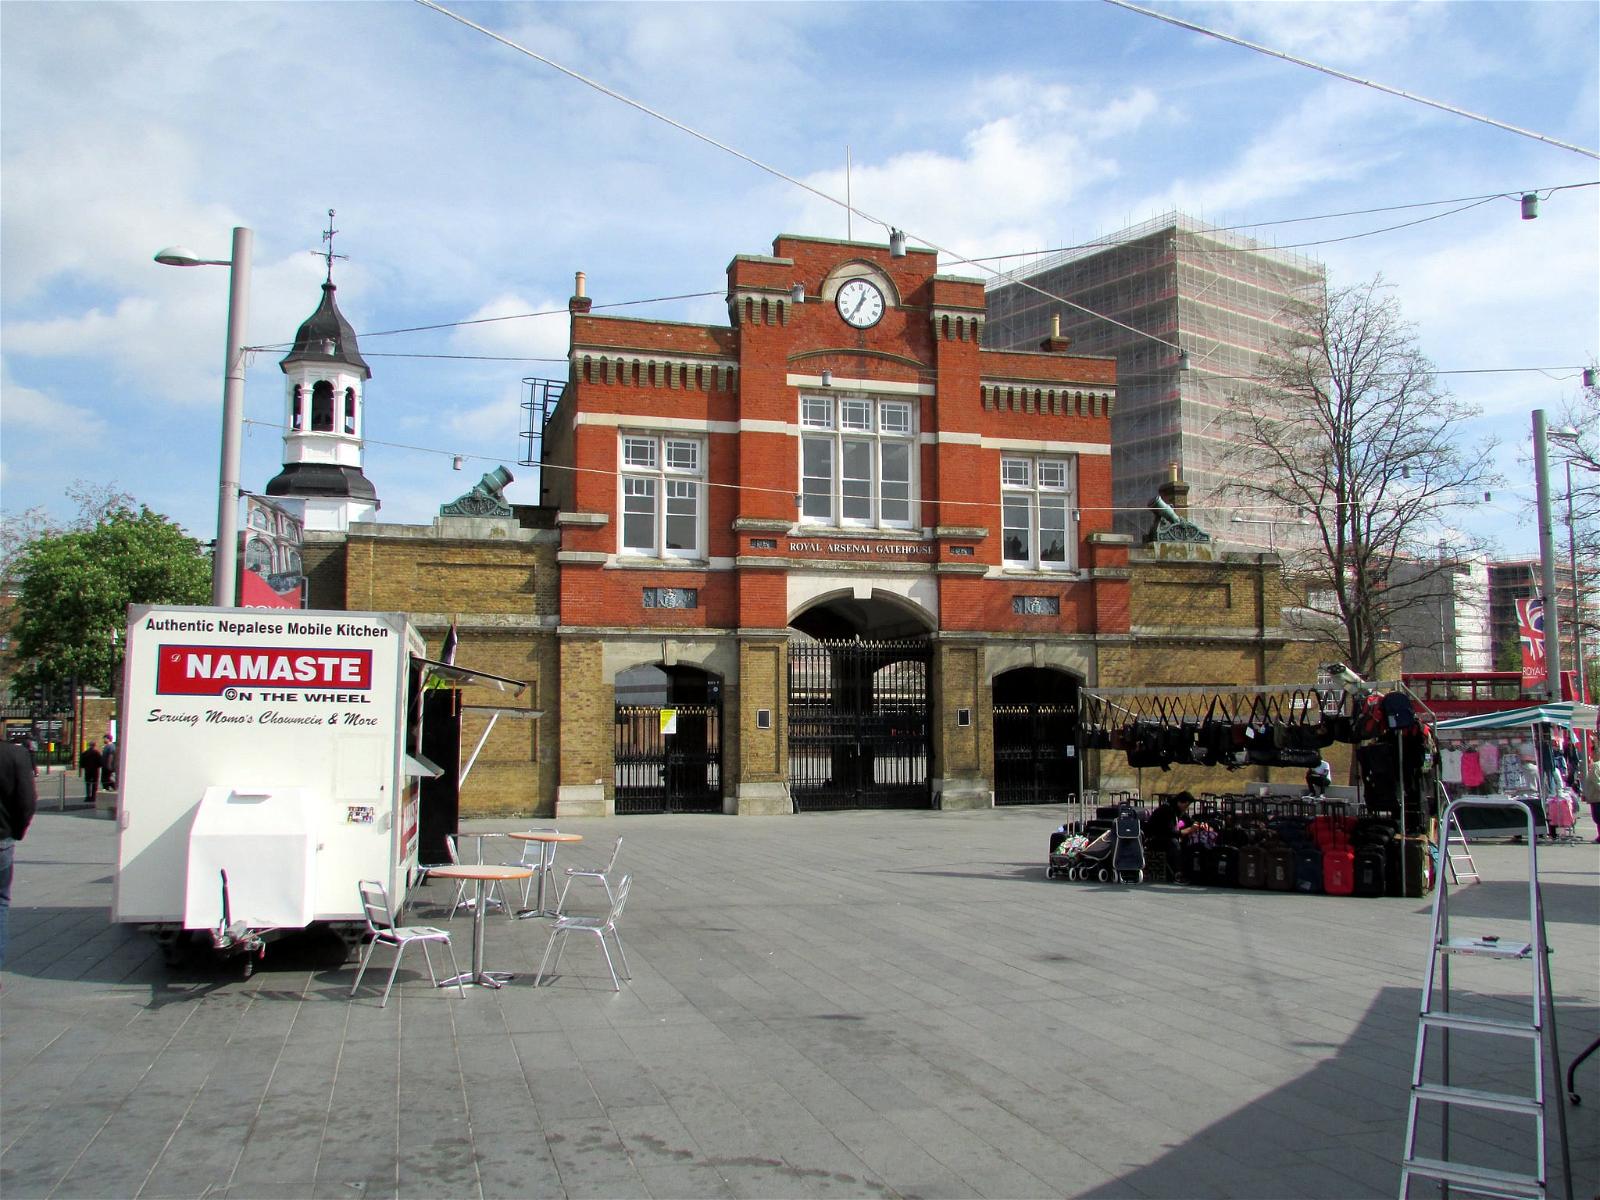 صورة Royal Arsenal Gatehouse. london woolwich